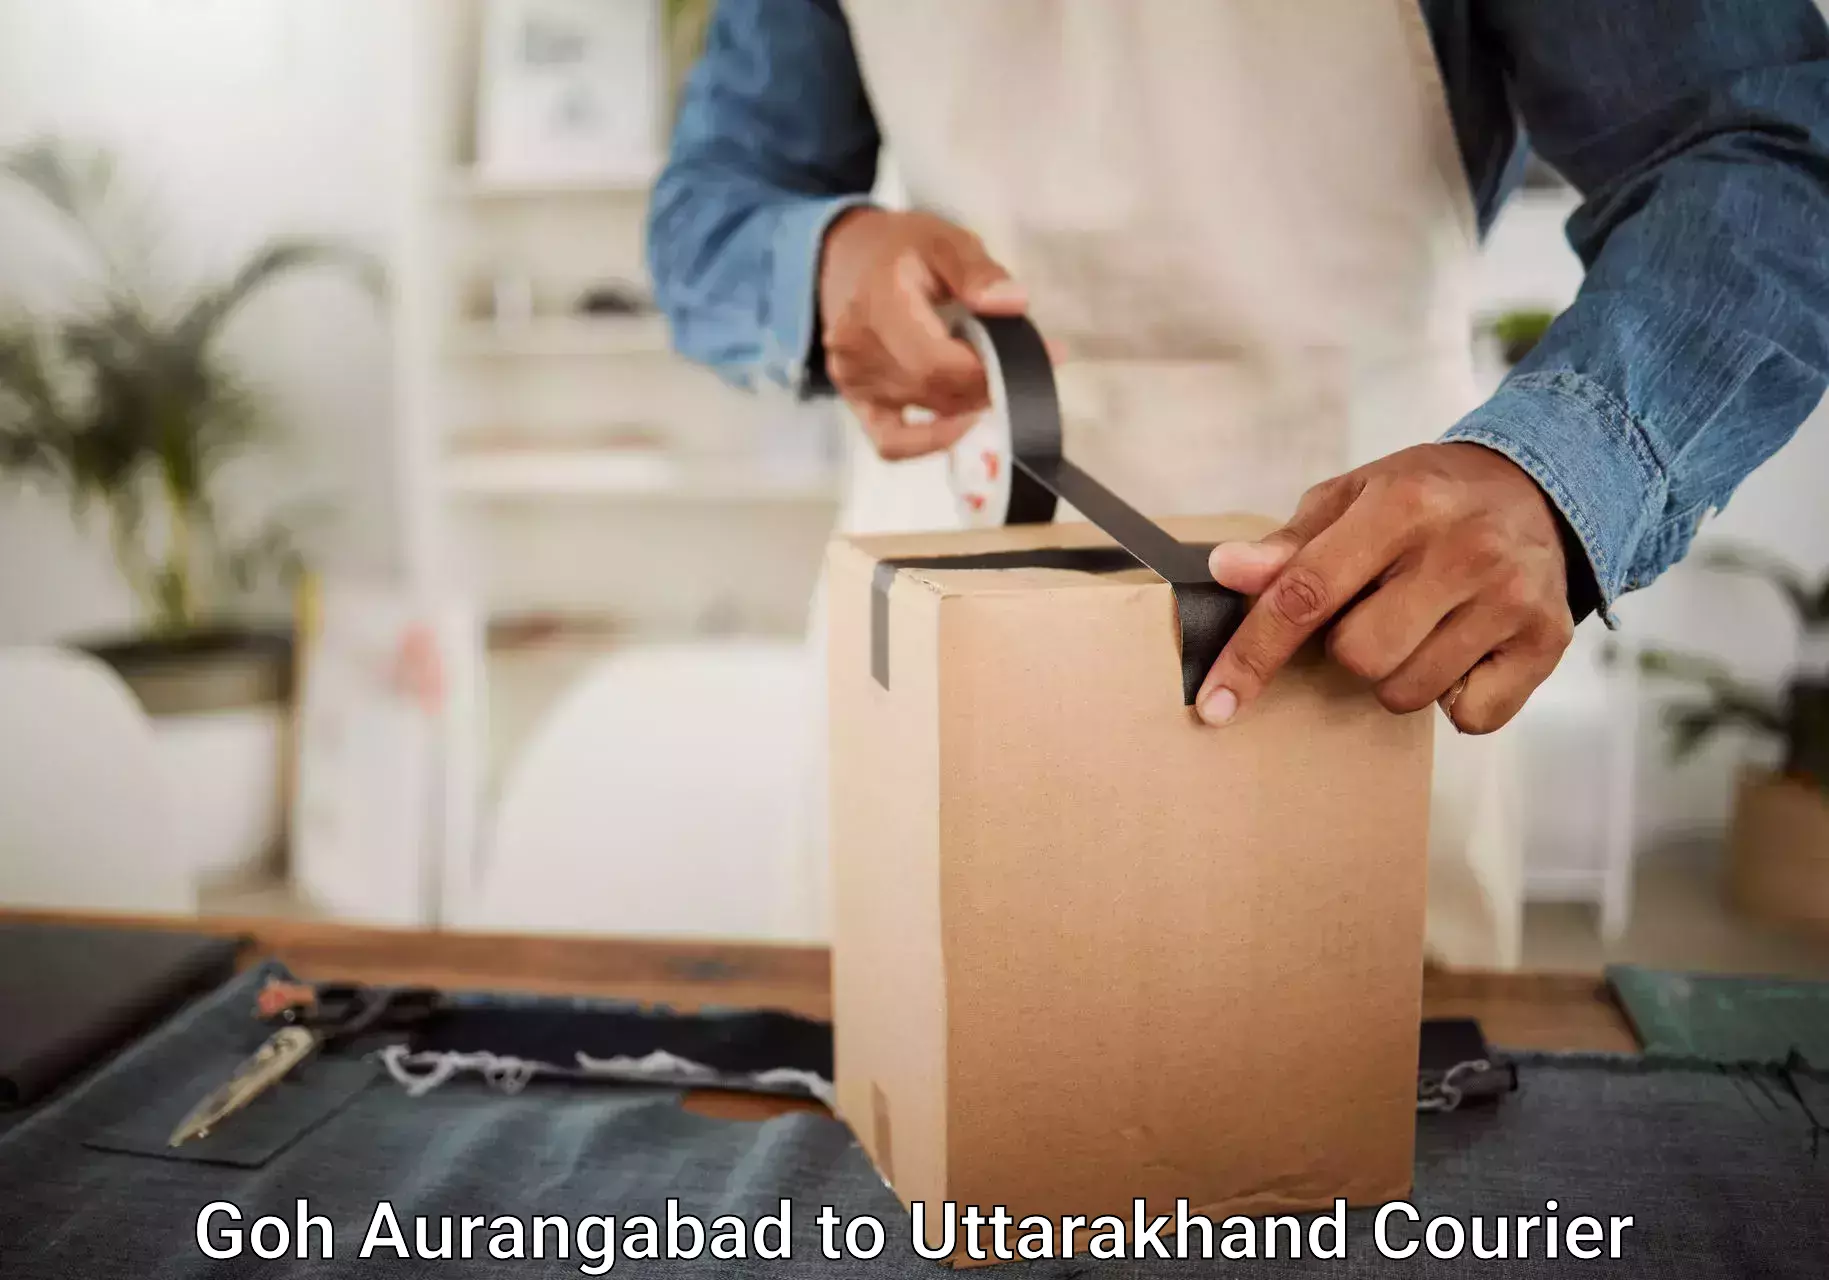 Baggage shipping experience in Goh Aurangabad to Uttarakhand